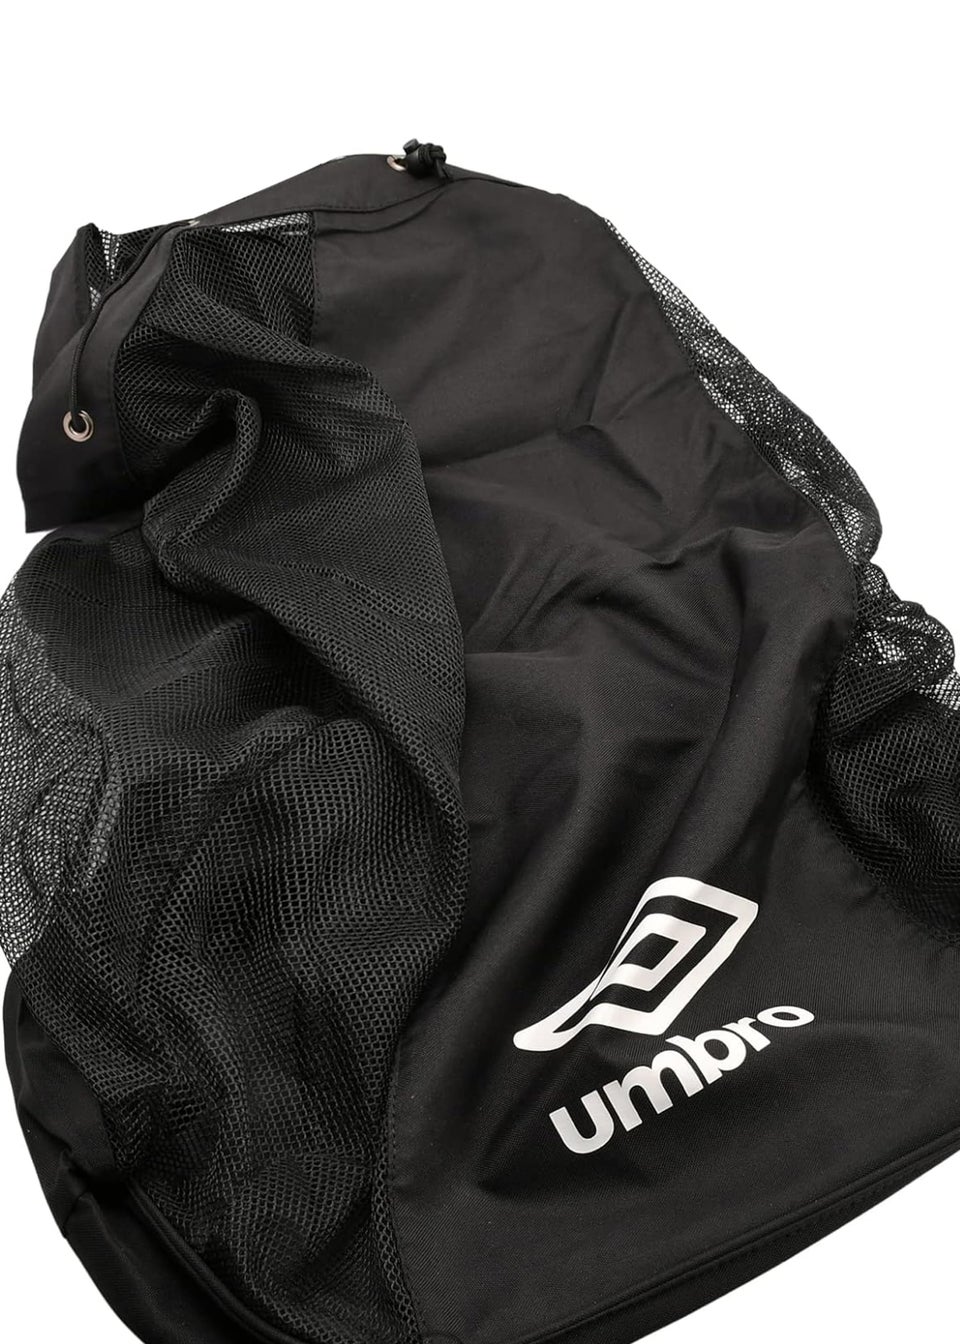 Umbro Black/White Logo Football Bag